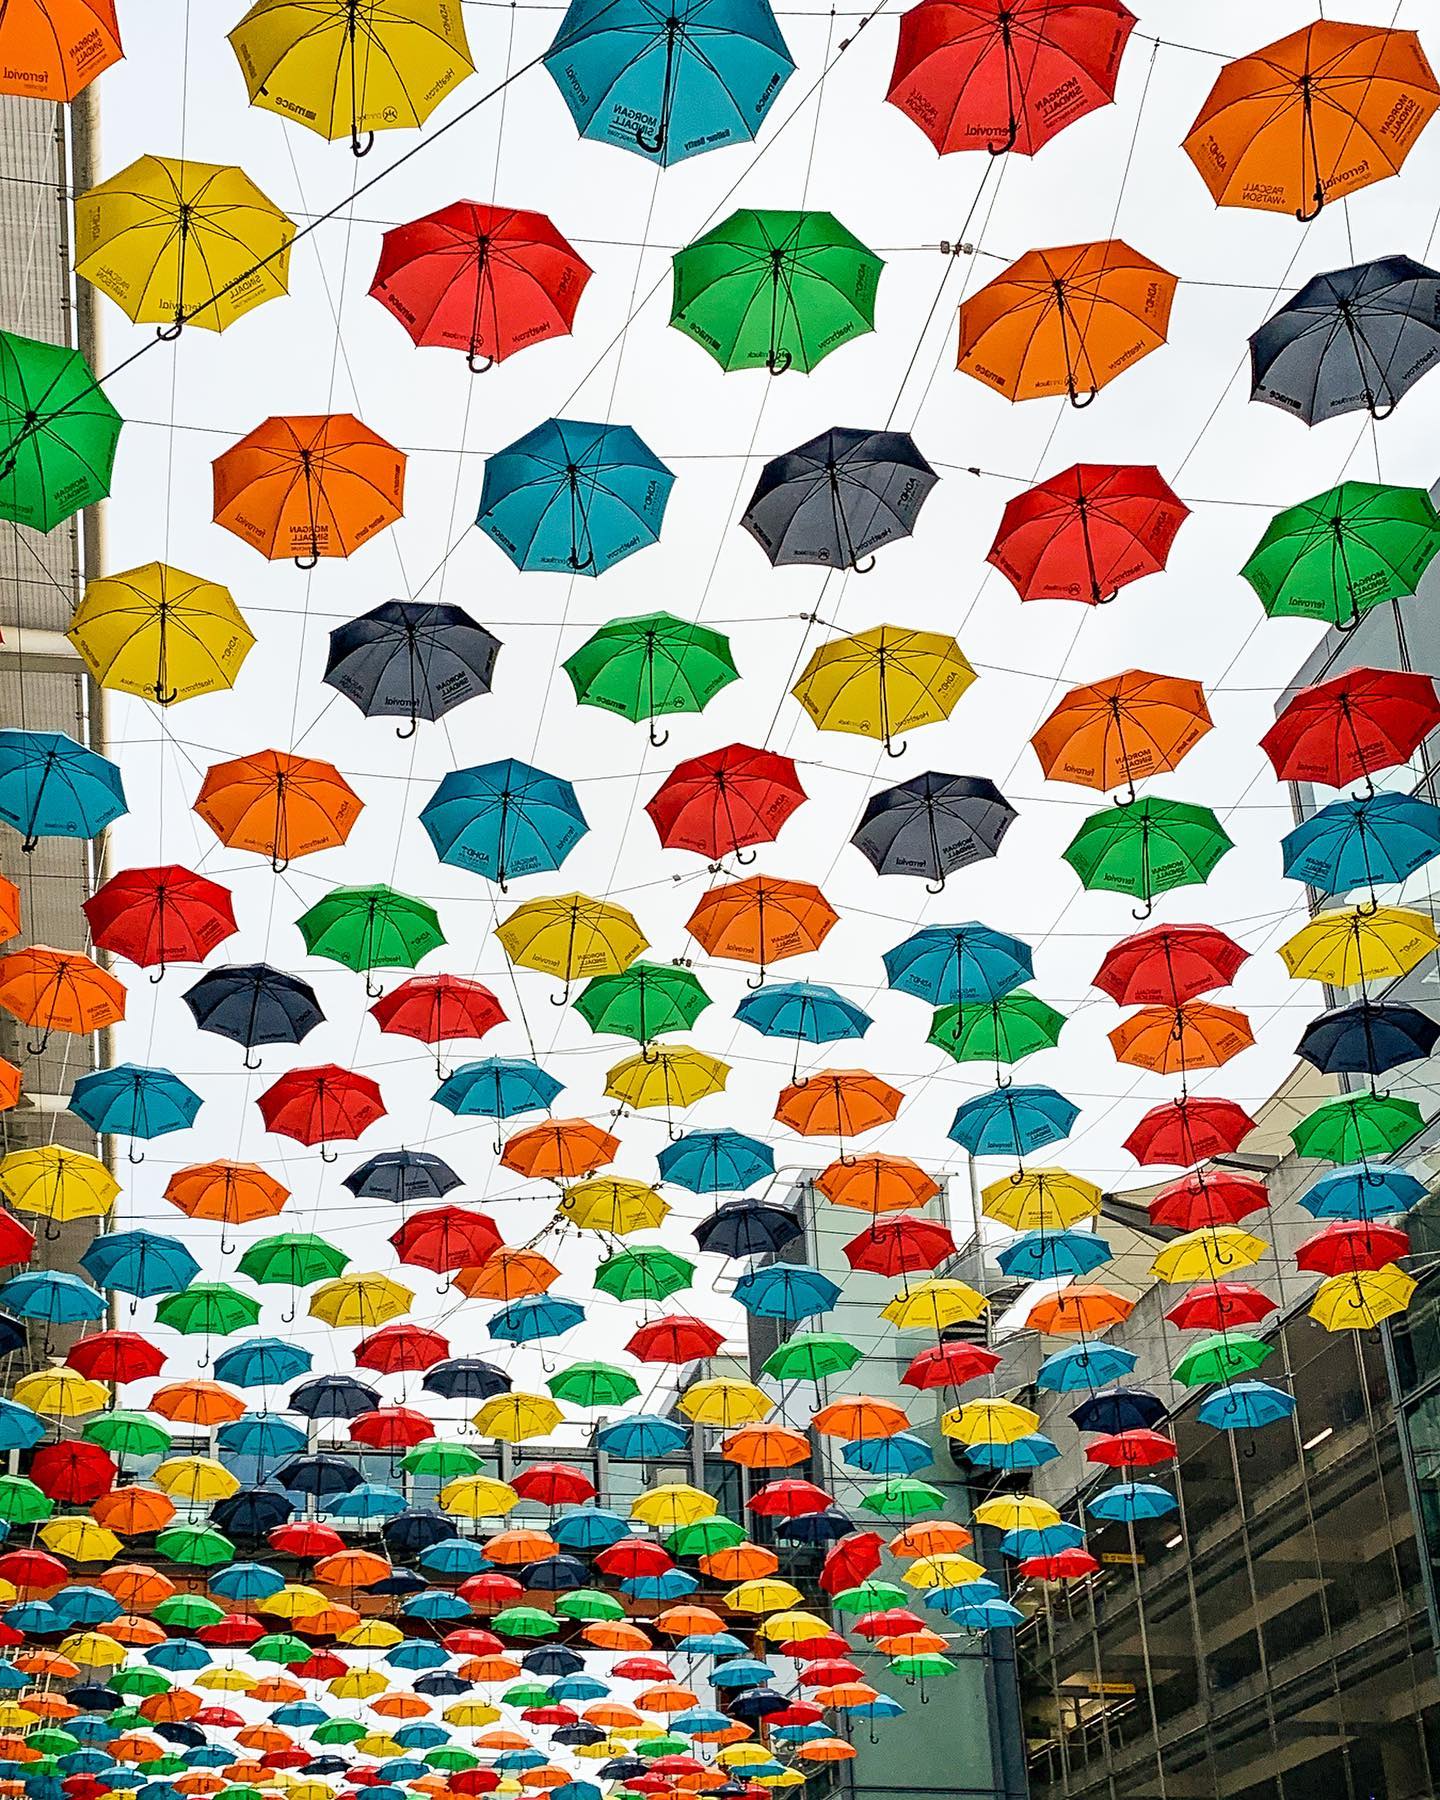 Umbrella team #umbrella #umbrellas #photographer #photography #photographerlondon #photographyserviceslondon #photographyservicebuckinghamshire #photographyserviceberkshire